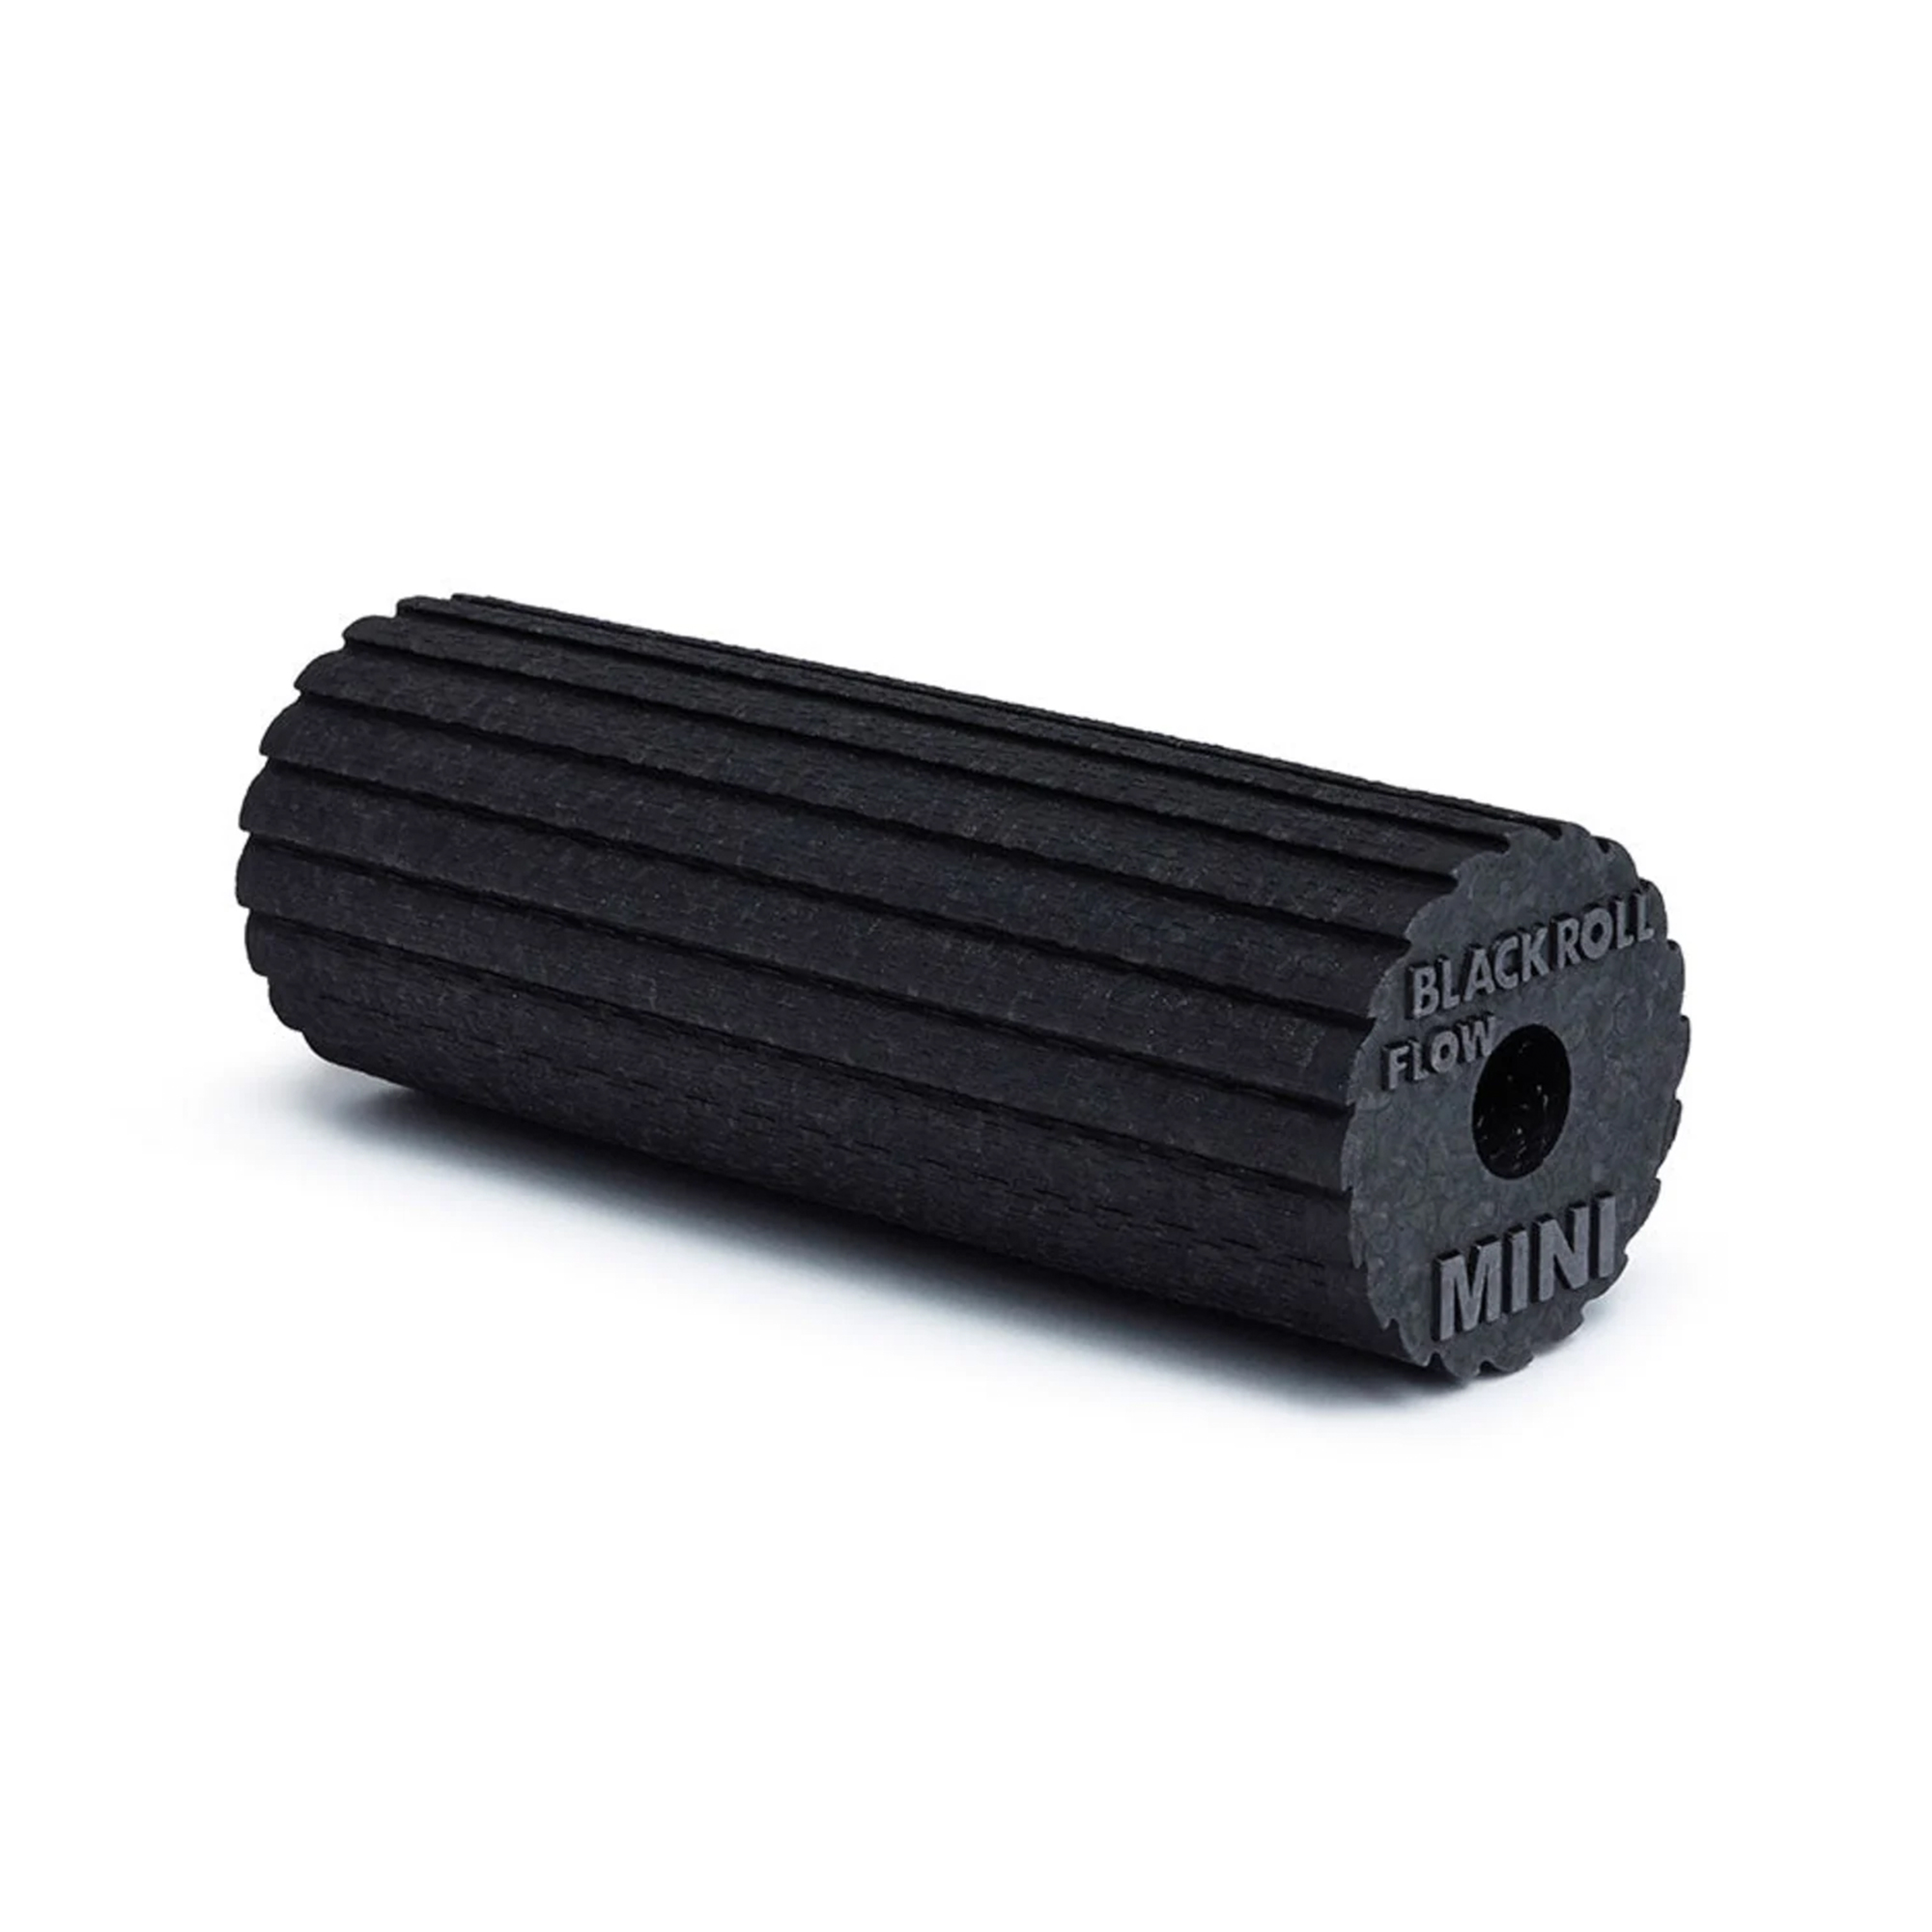 Brug Blackroll Mini Flow Foam Roller - Sort (15 cm x 6 cm) til en forbedret oplevelse